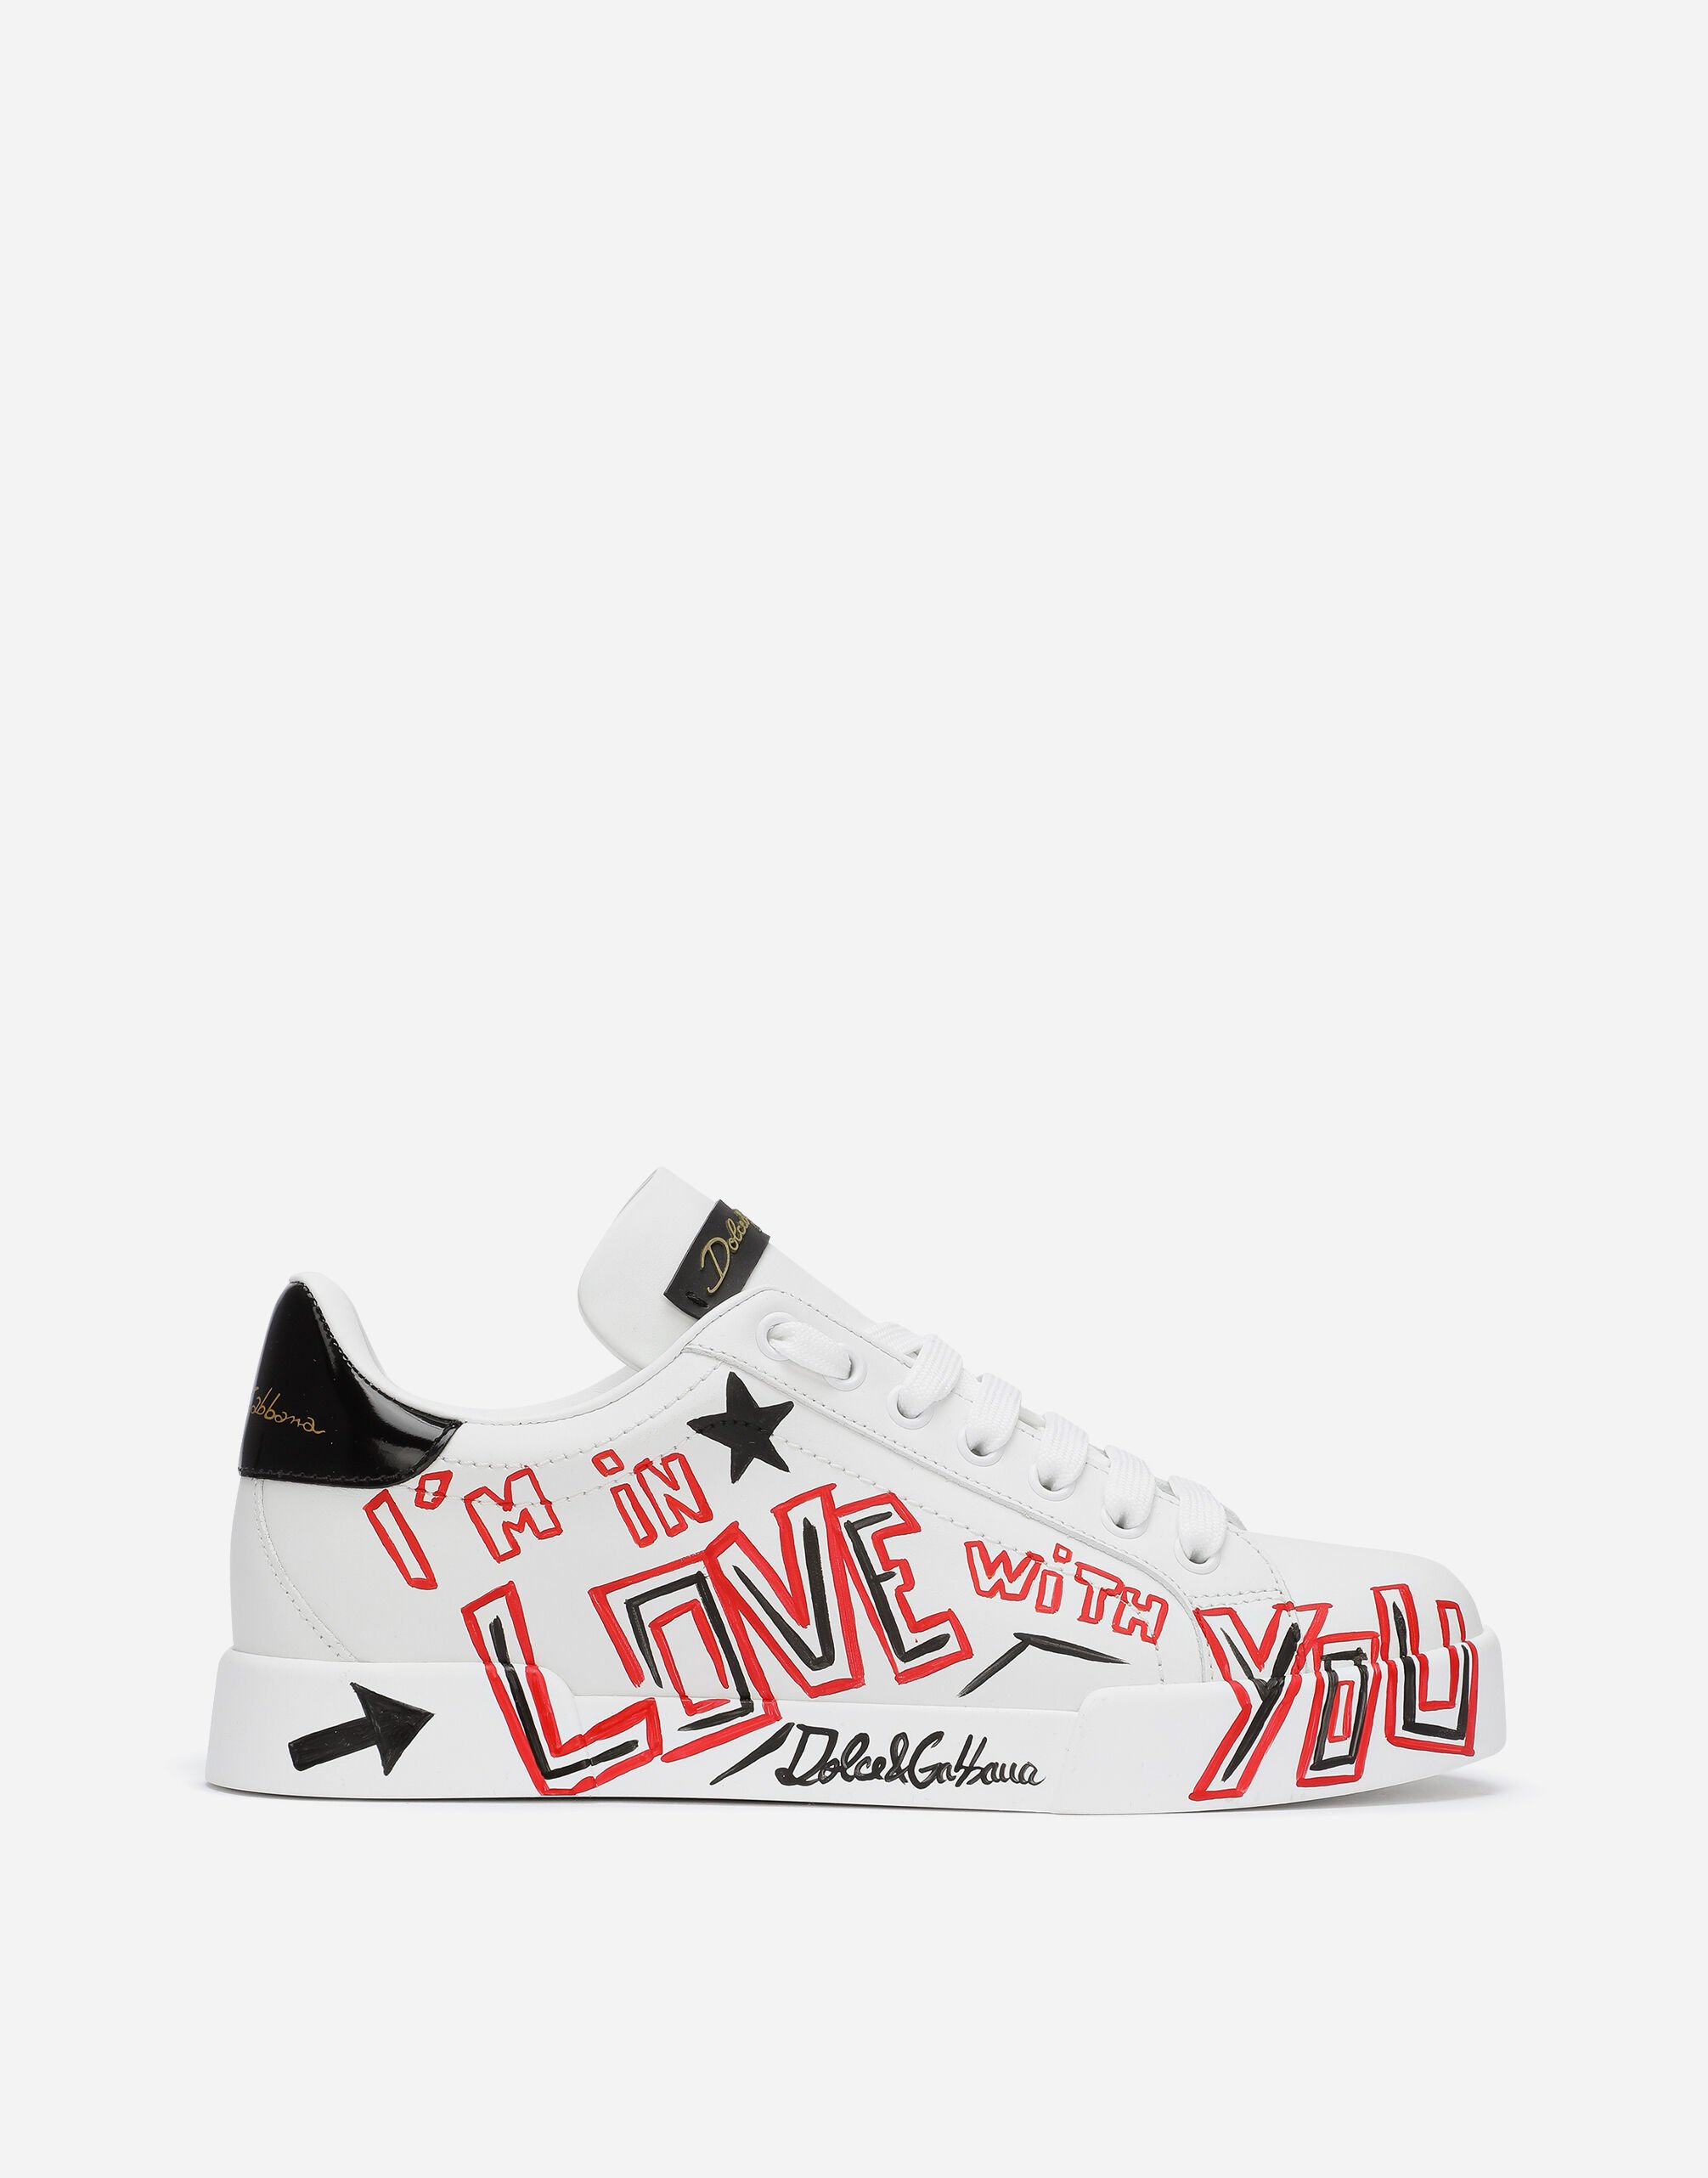 ${brand} Portofino Cuore sneakers ${colorDescription} ${masterID}